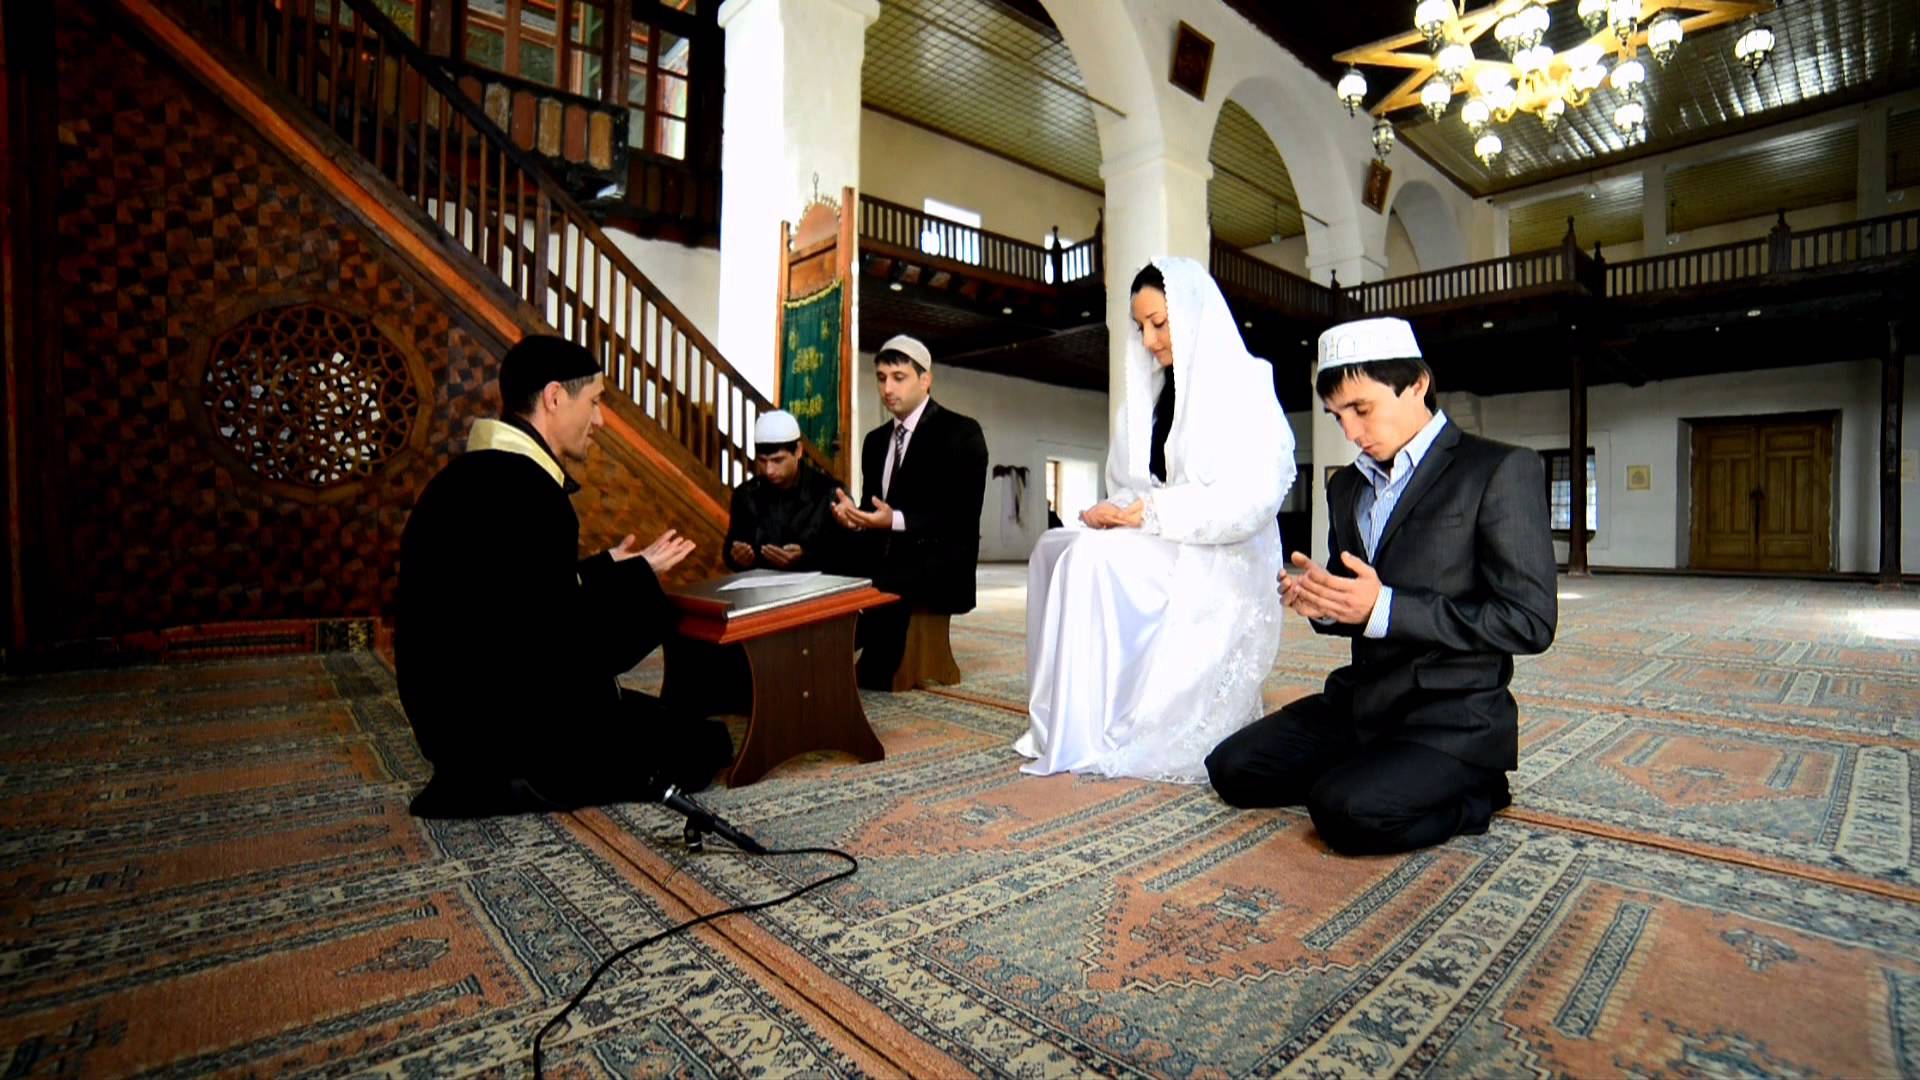 Первый ночь в исламе. Свадьба Никях в Турции мечеть. Традиционная мусульманская свадьба. Свадьба в Исламе. Брак с мусульманином.